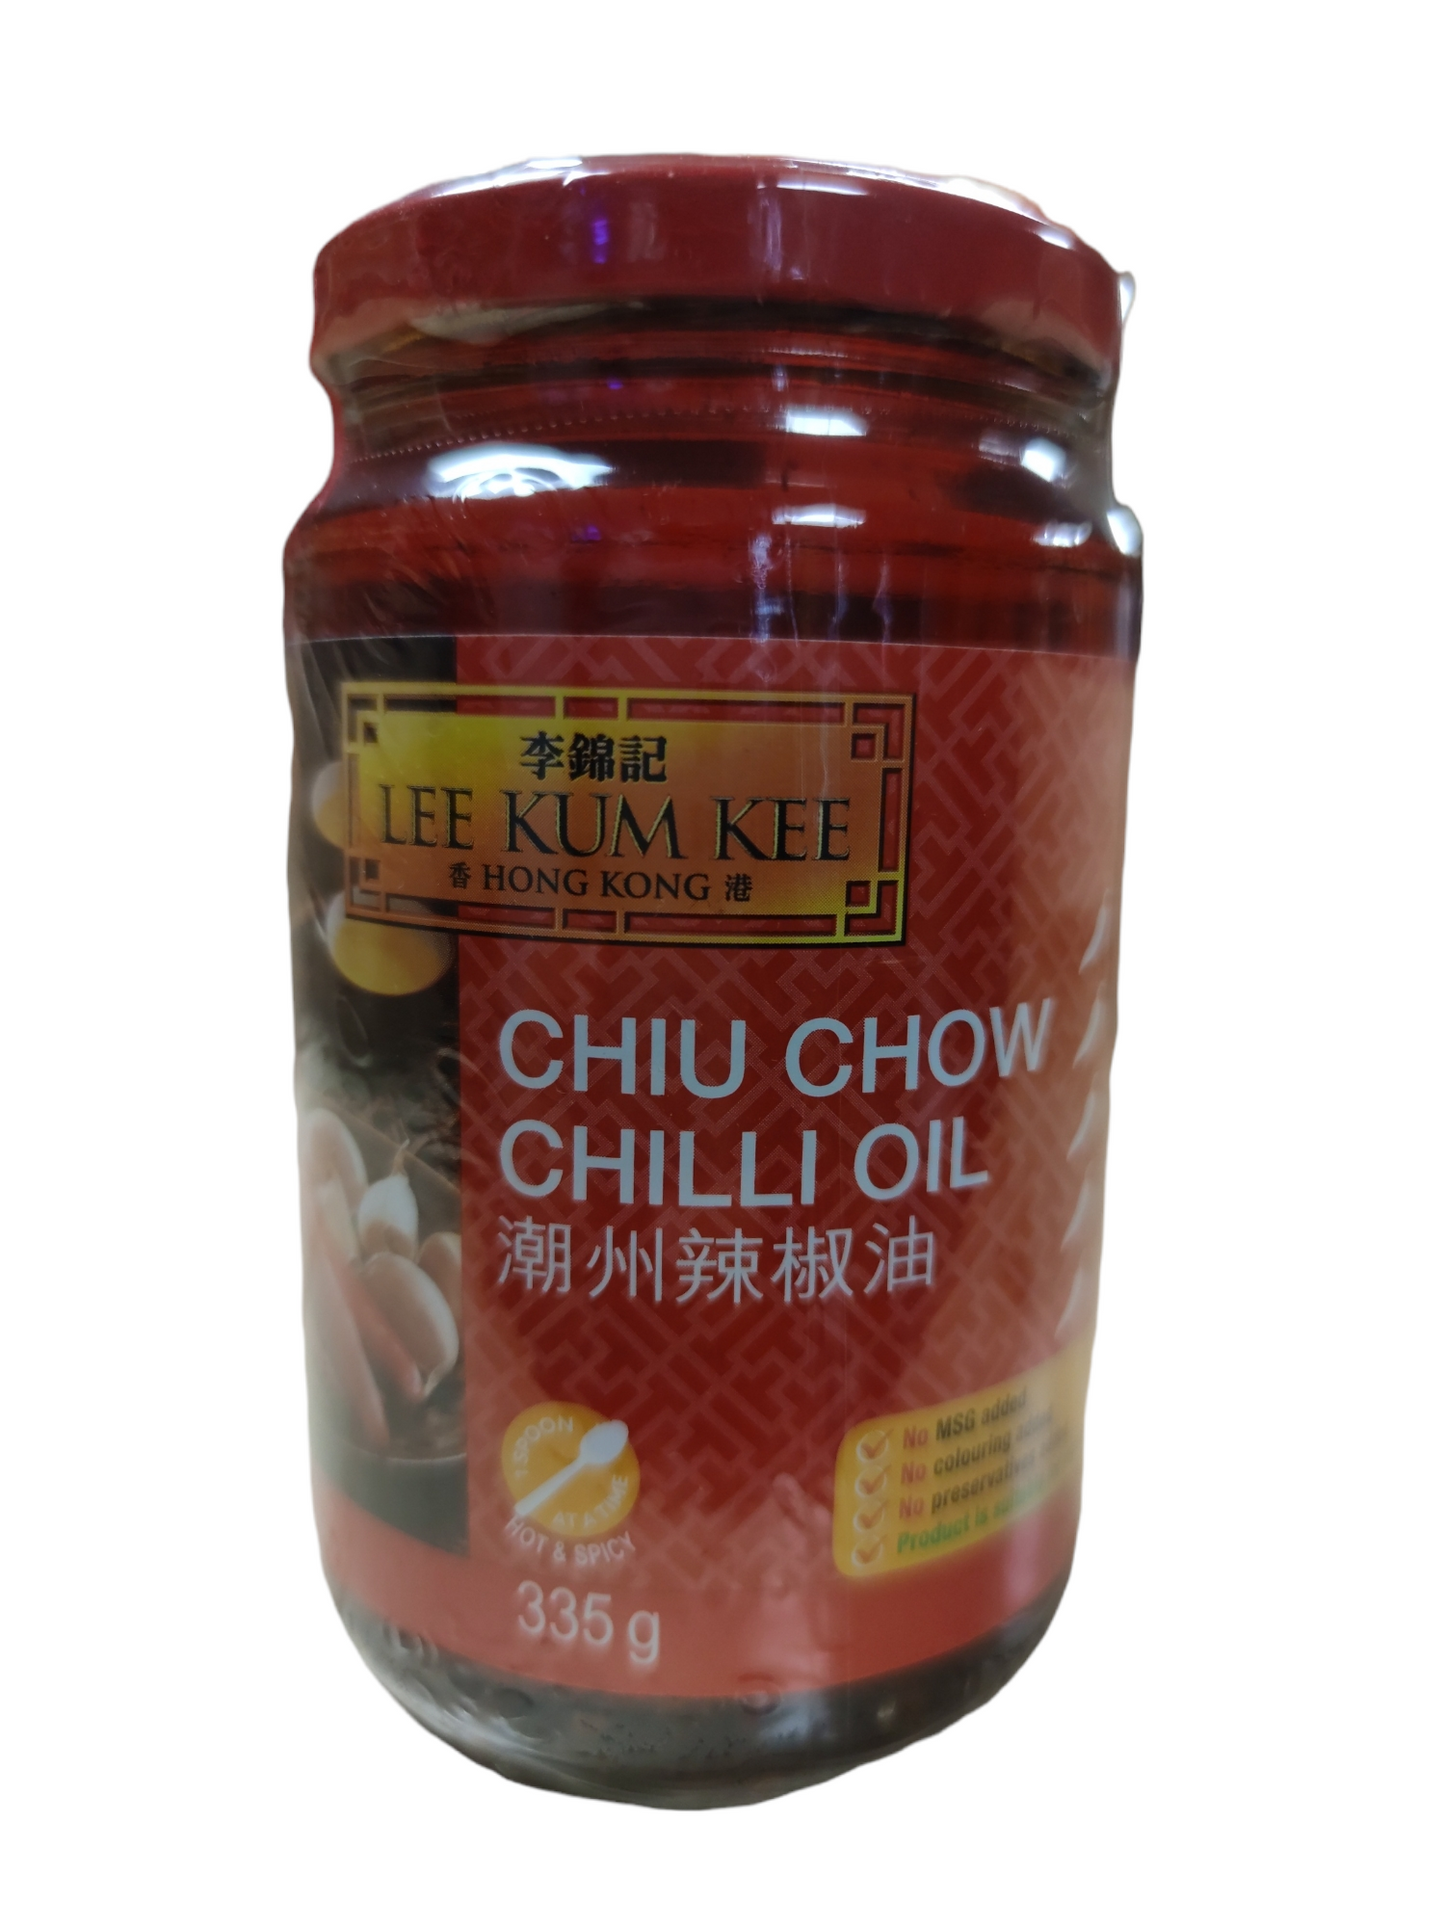 LKK Chiu Chow Chilli Oil 335g 李錦記潮州辣椒油